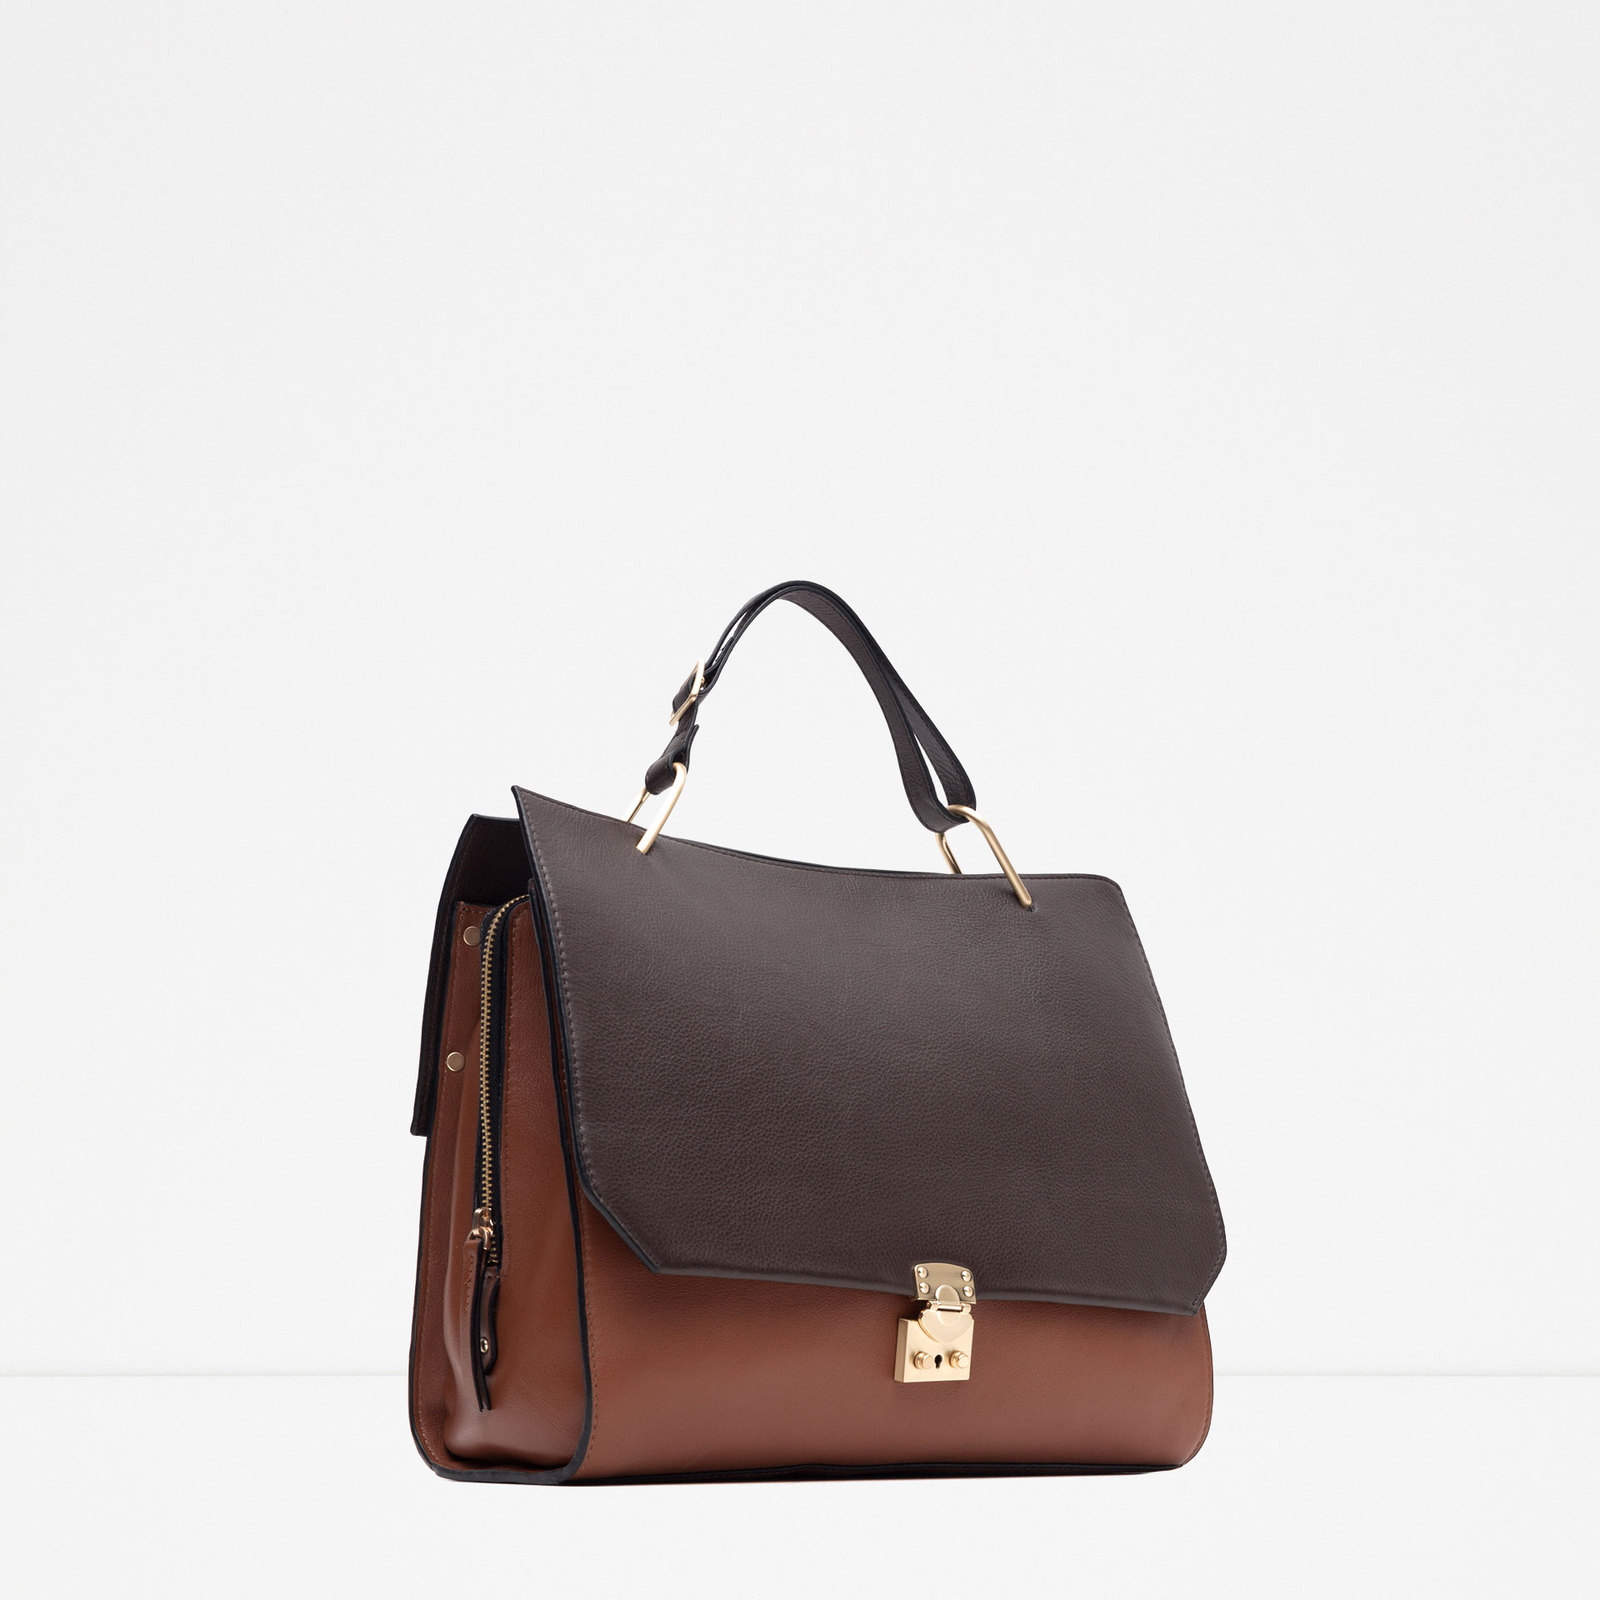 Zara kétszínű bőr női táska 2015.10.15 fotója